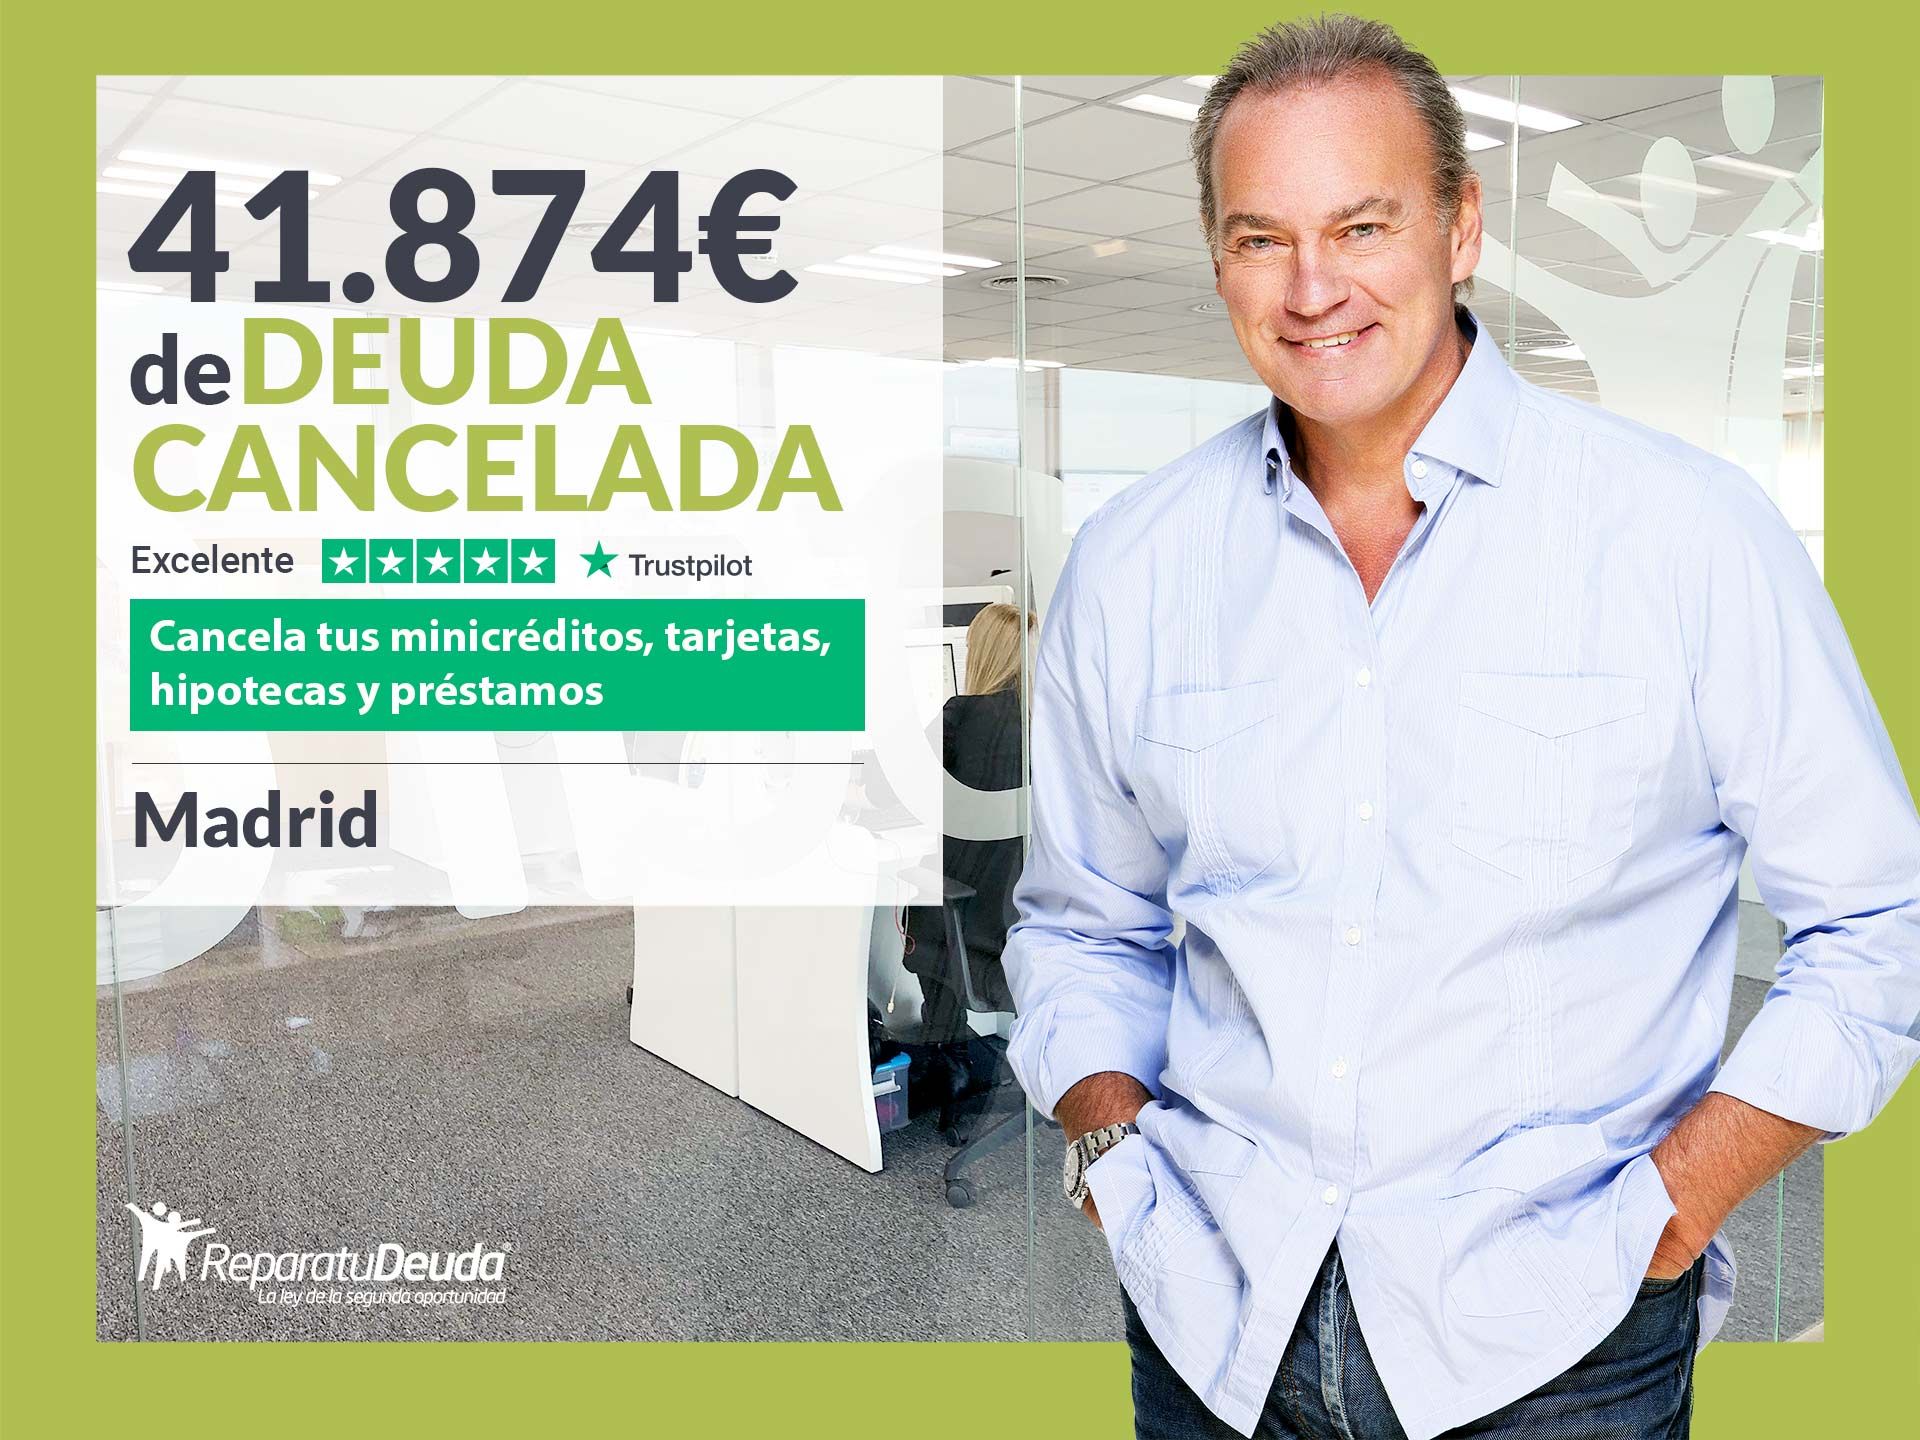 Repara tu Deuda Abogados cancela 41.874? en Madrid con la Ley de Segunda Oportunidad